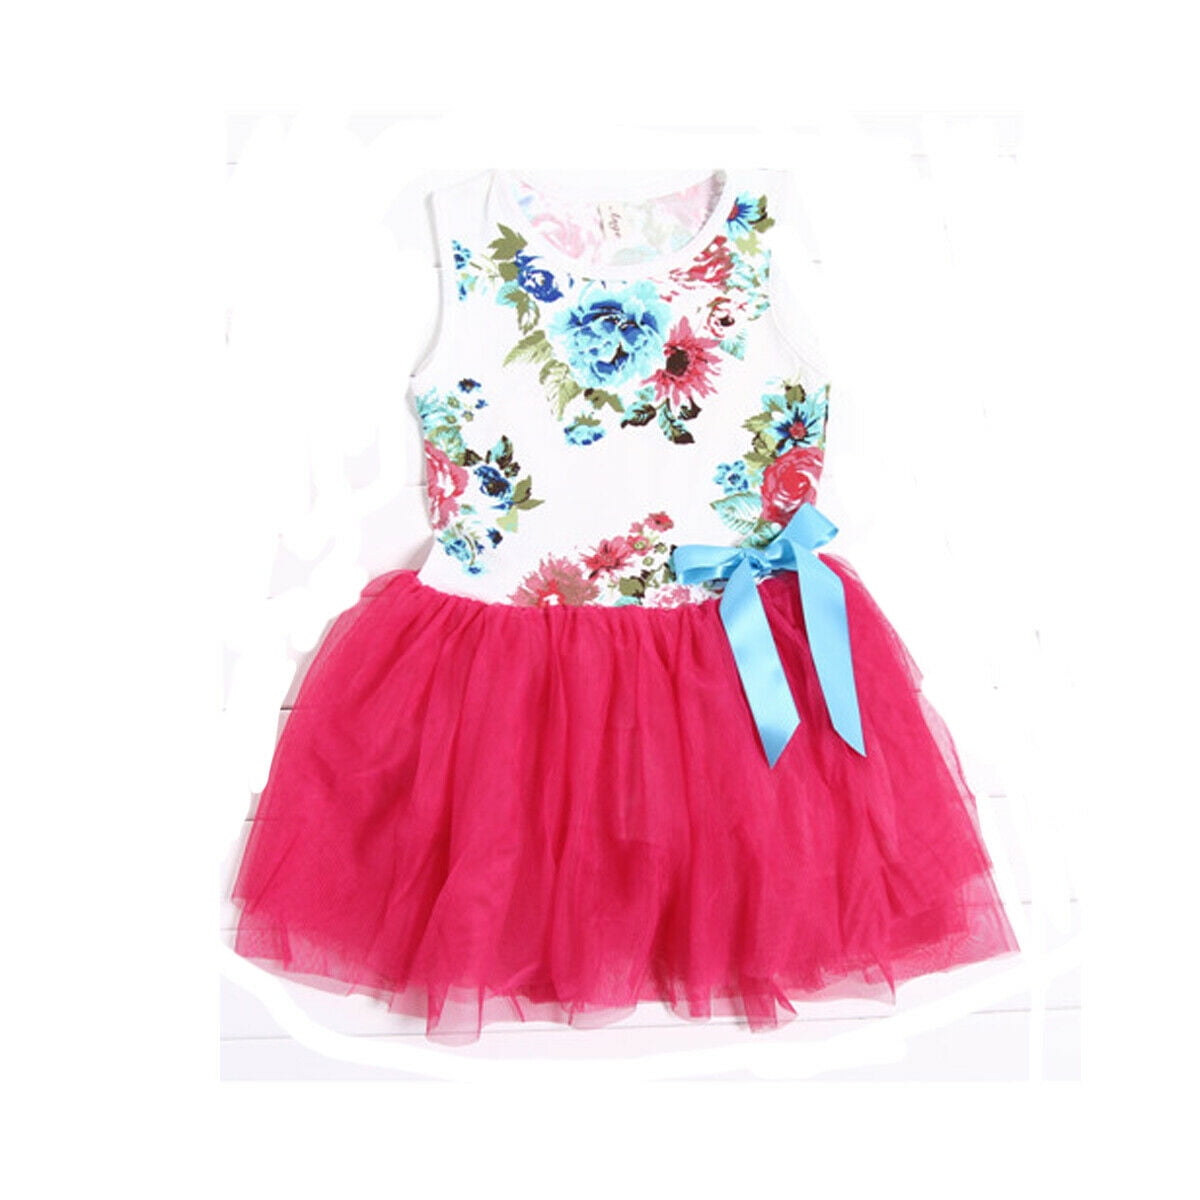 Toddler Kids Baby Girls Backless Skirt Dress Elegant Princess Dresses Summer 1-5 Years 